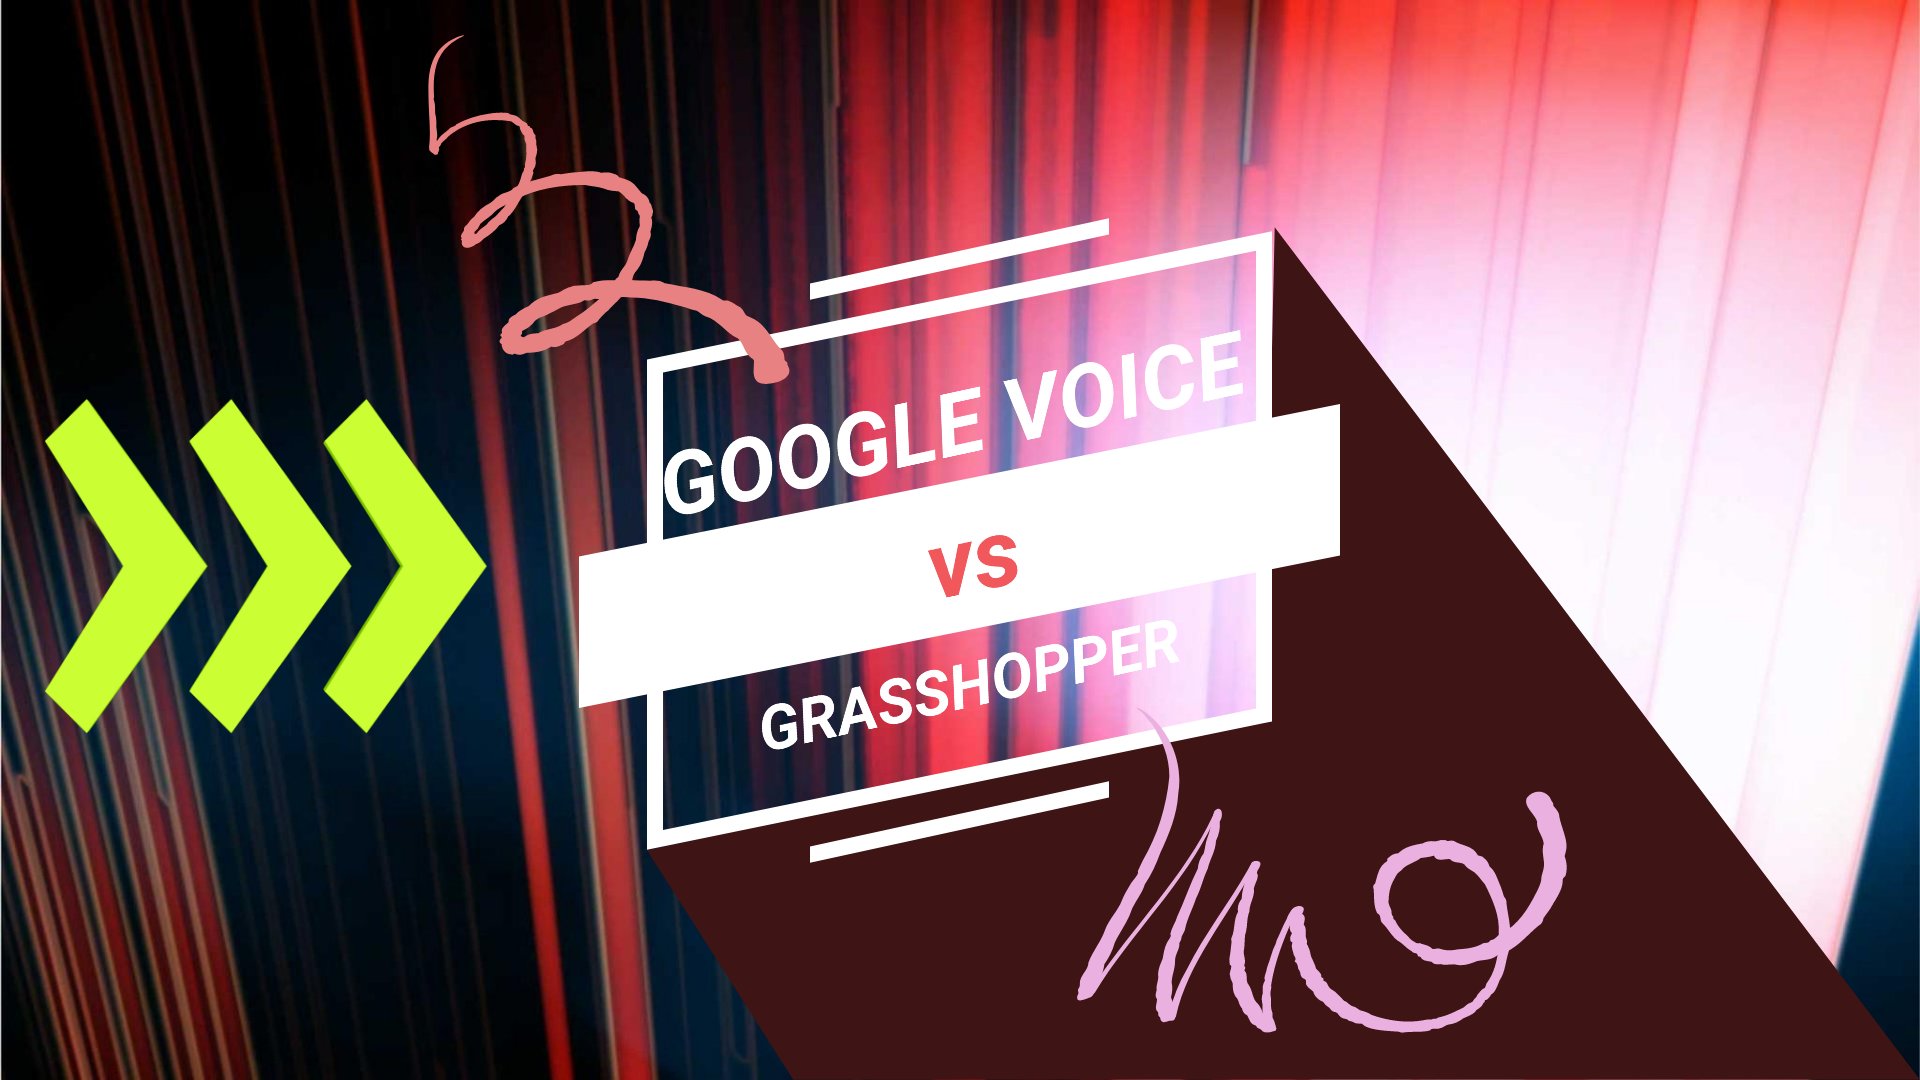 Google Voice vs Grasshopper